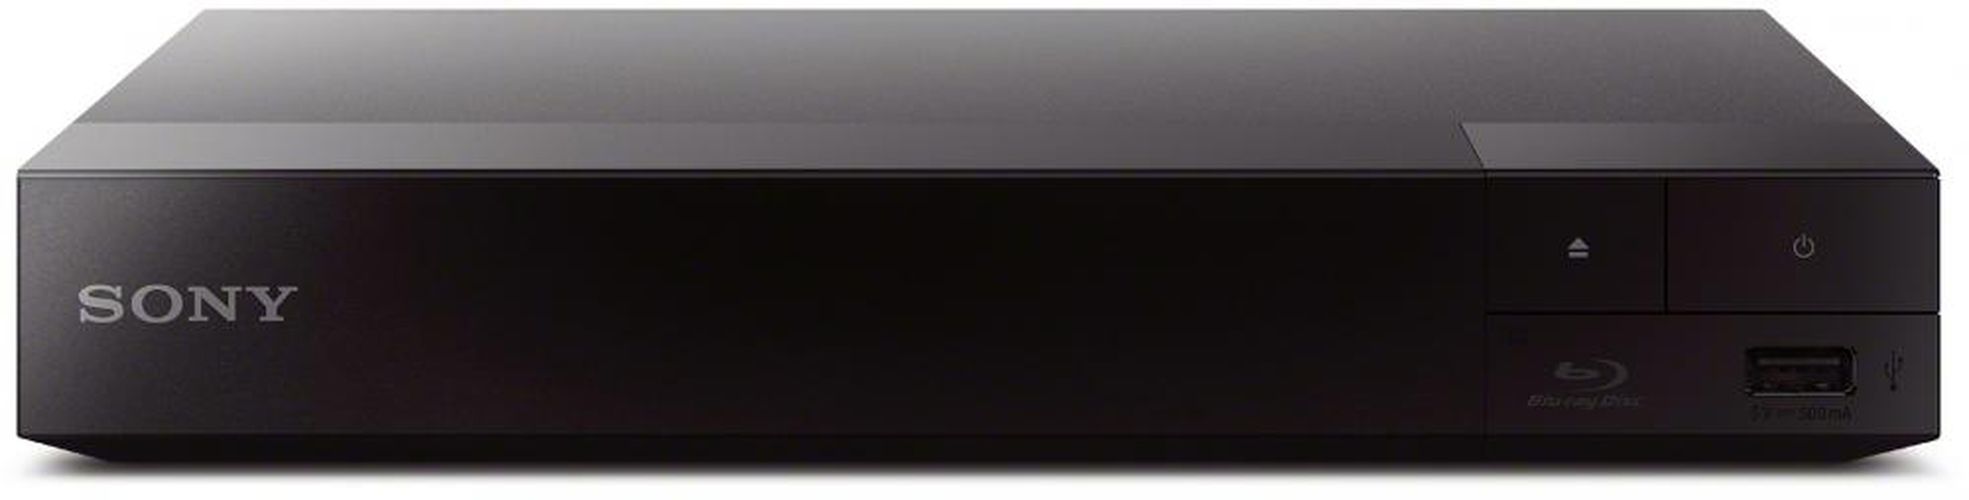 Blu-ray-плеер Sony BDP-S1500, купить недорого